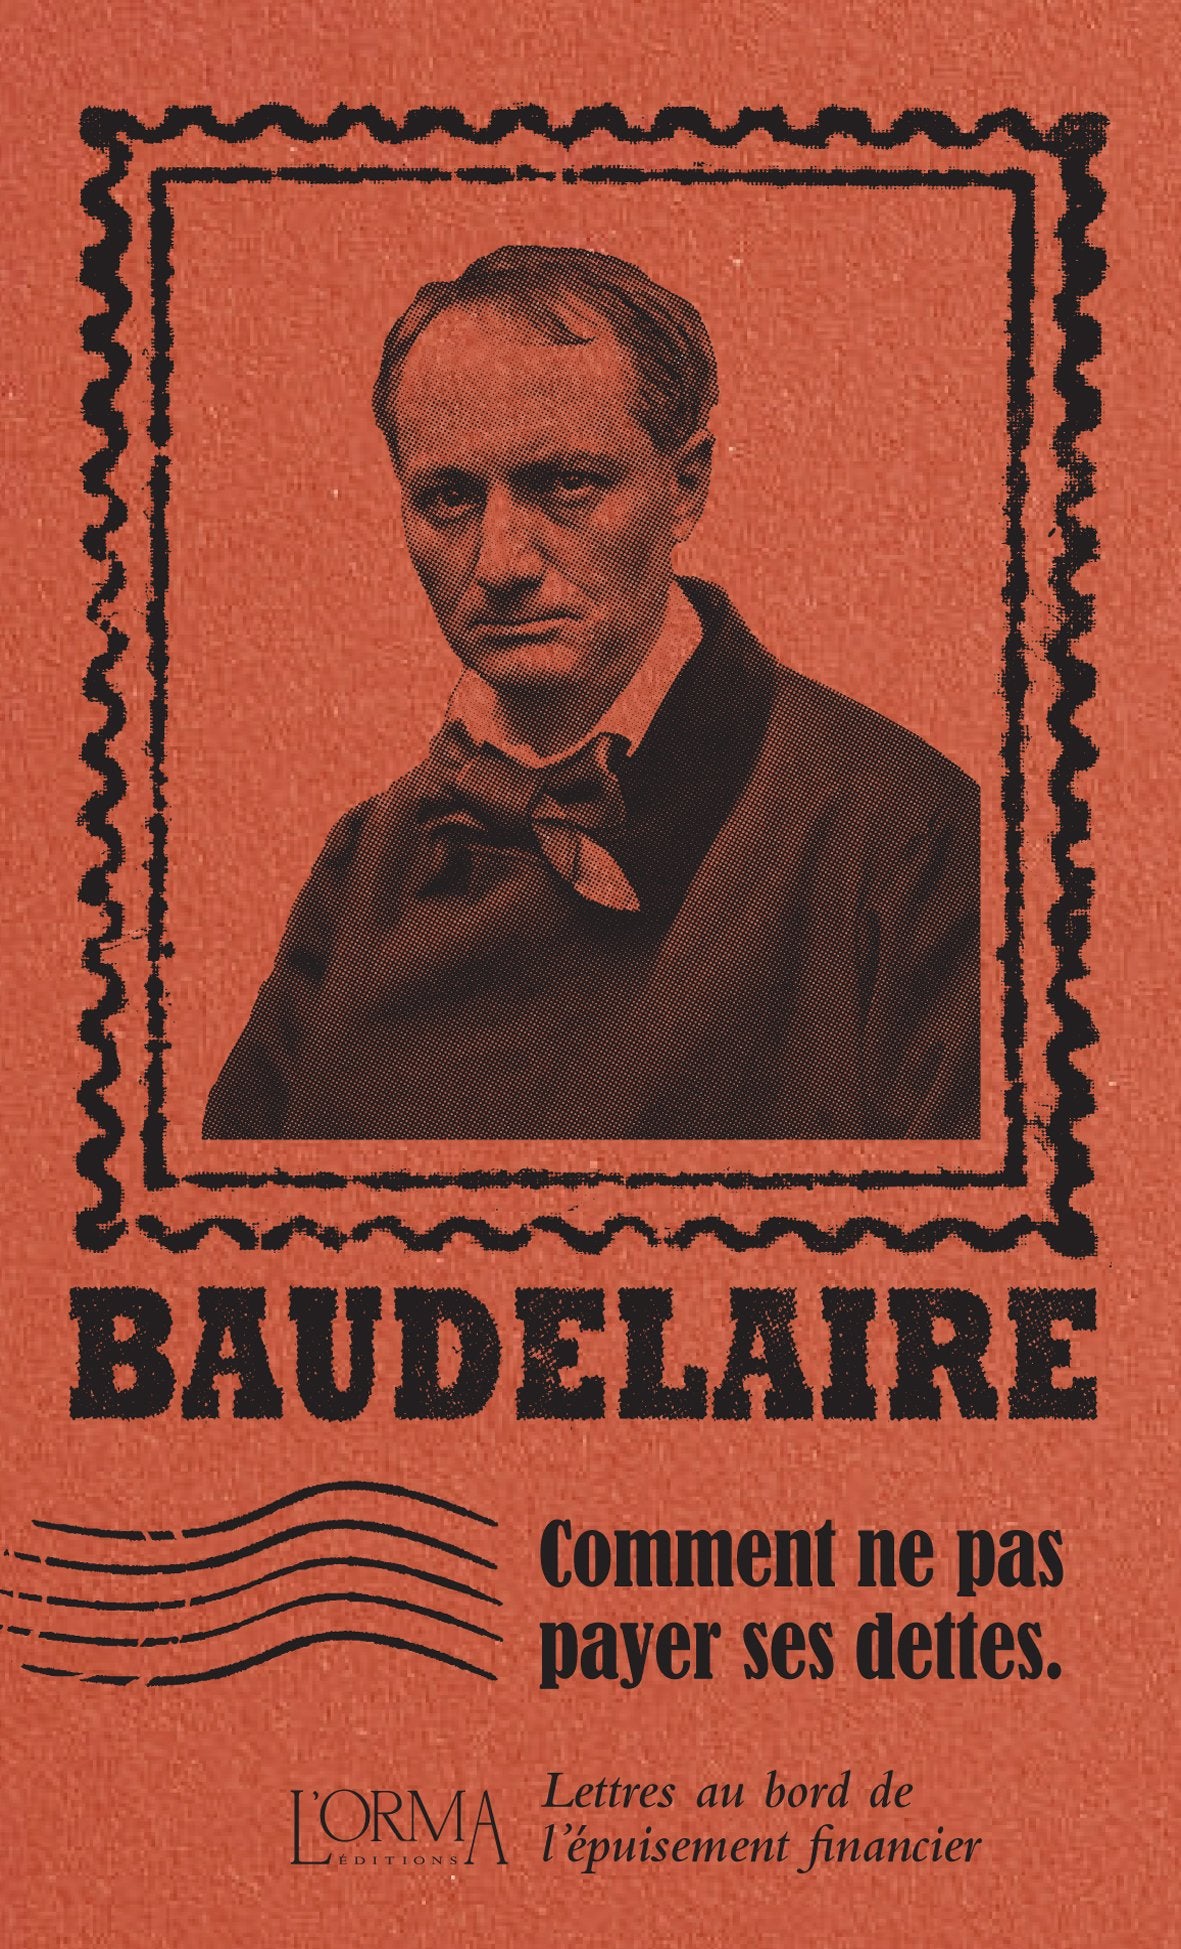 Comment ne pas payer ses dettes - Baudelaire